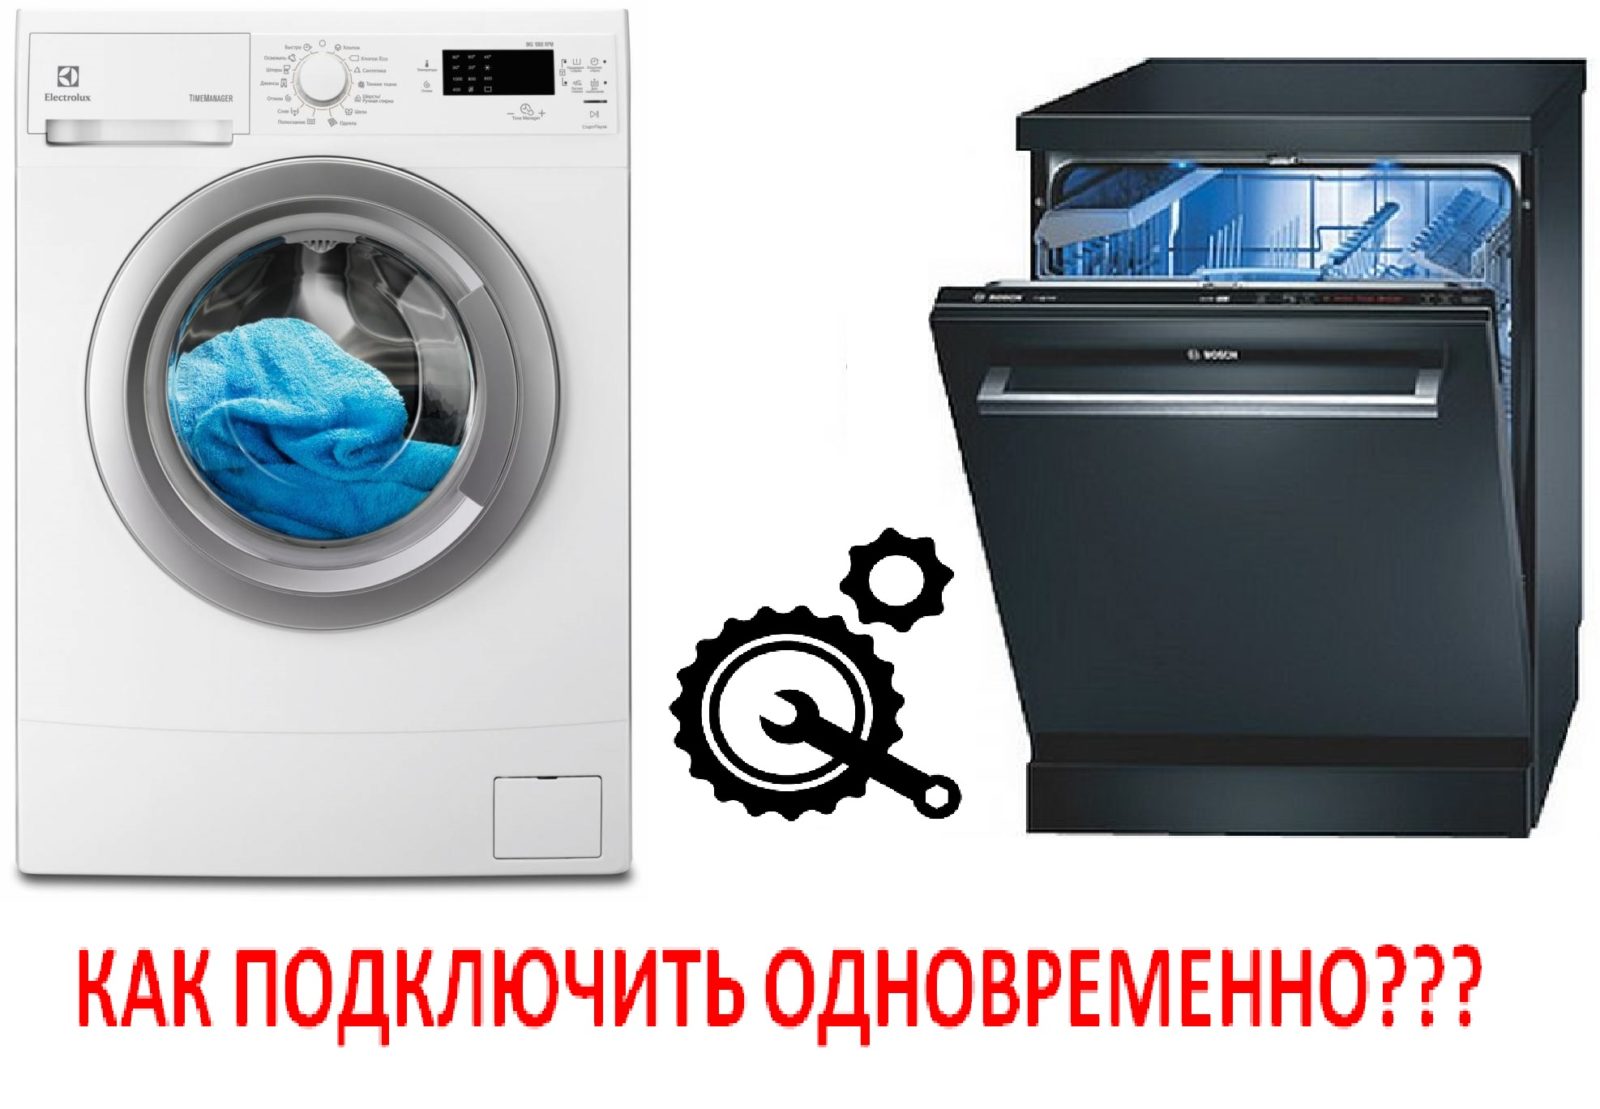 So verbinden Sie Waschmaschine und Geschirrspüler